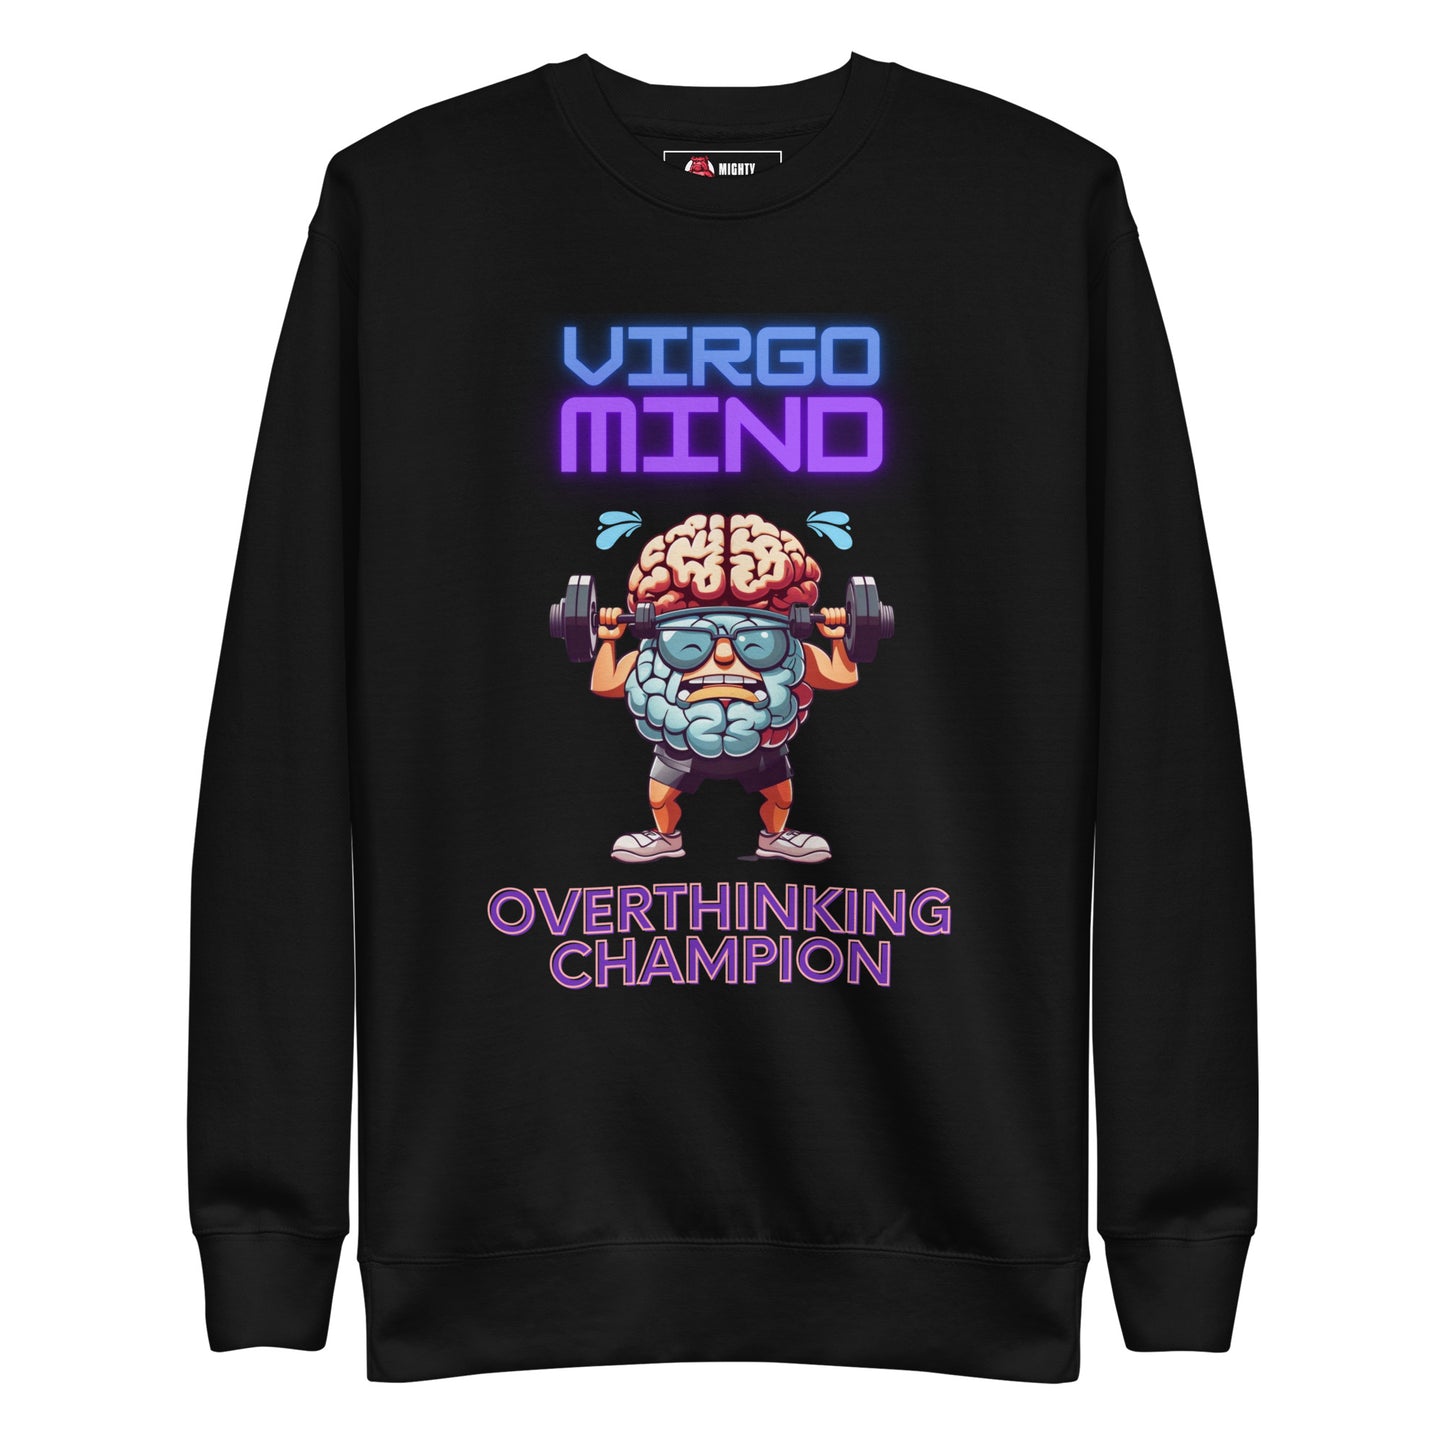 "Virgo Mind, Overthinking Champion" Sweatshirt